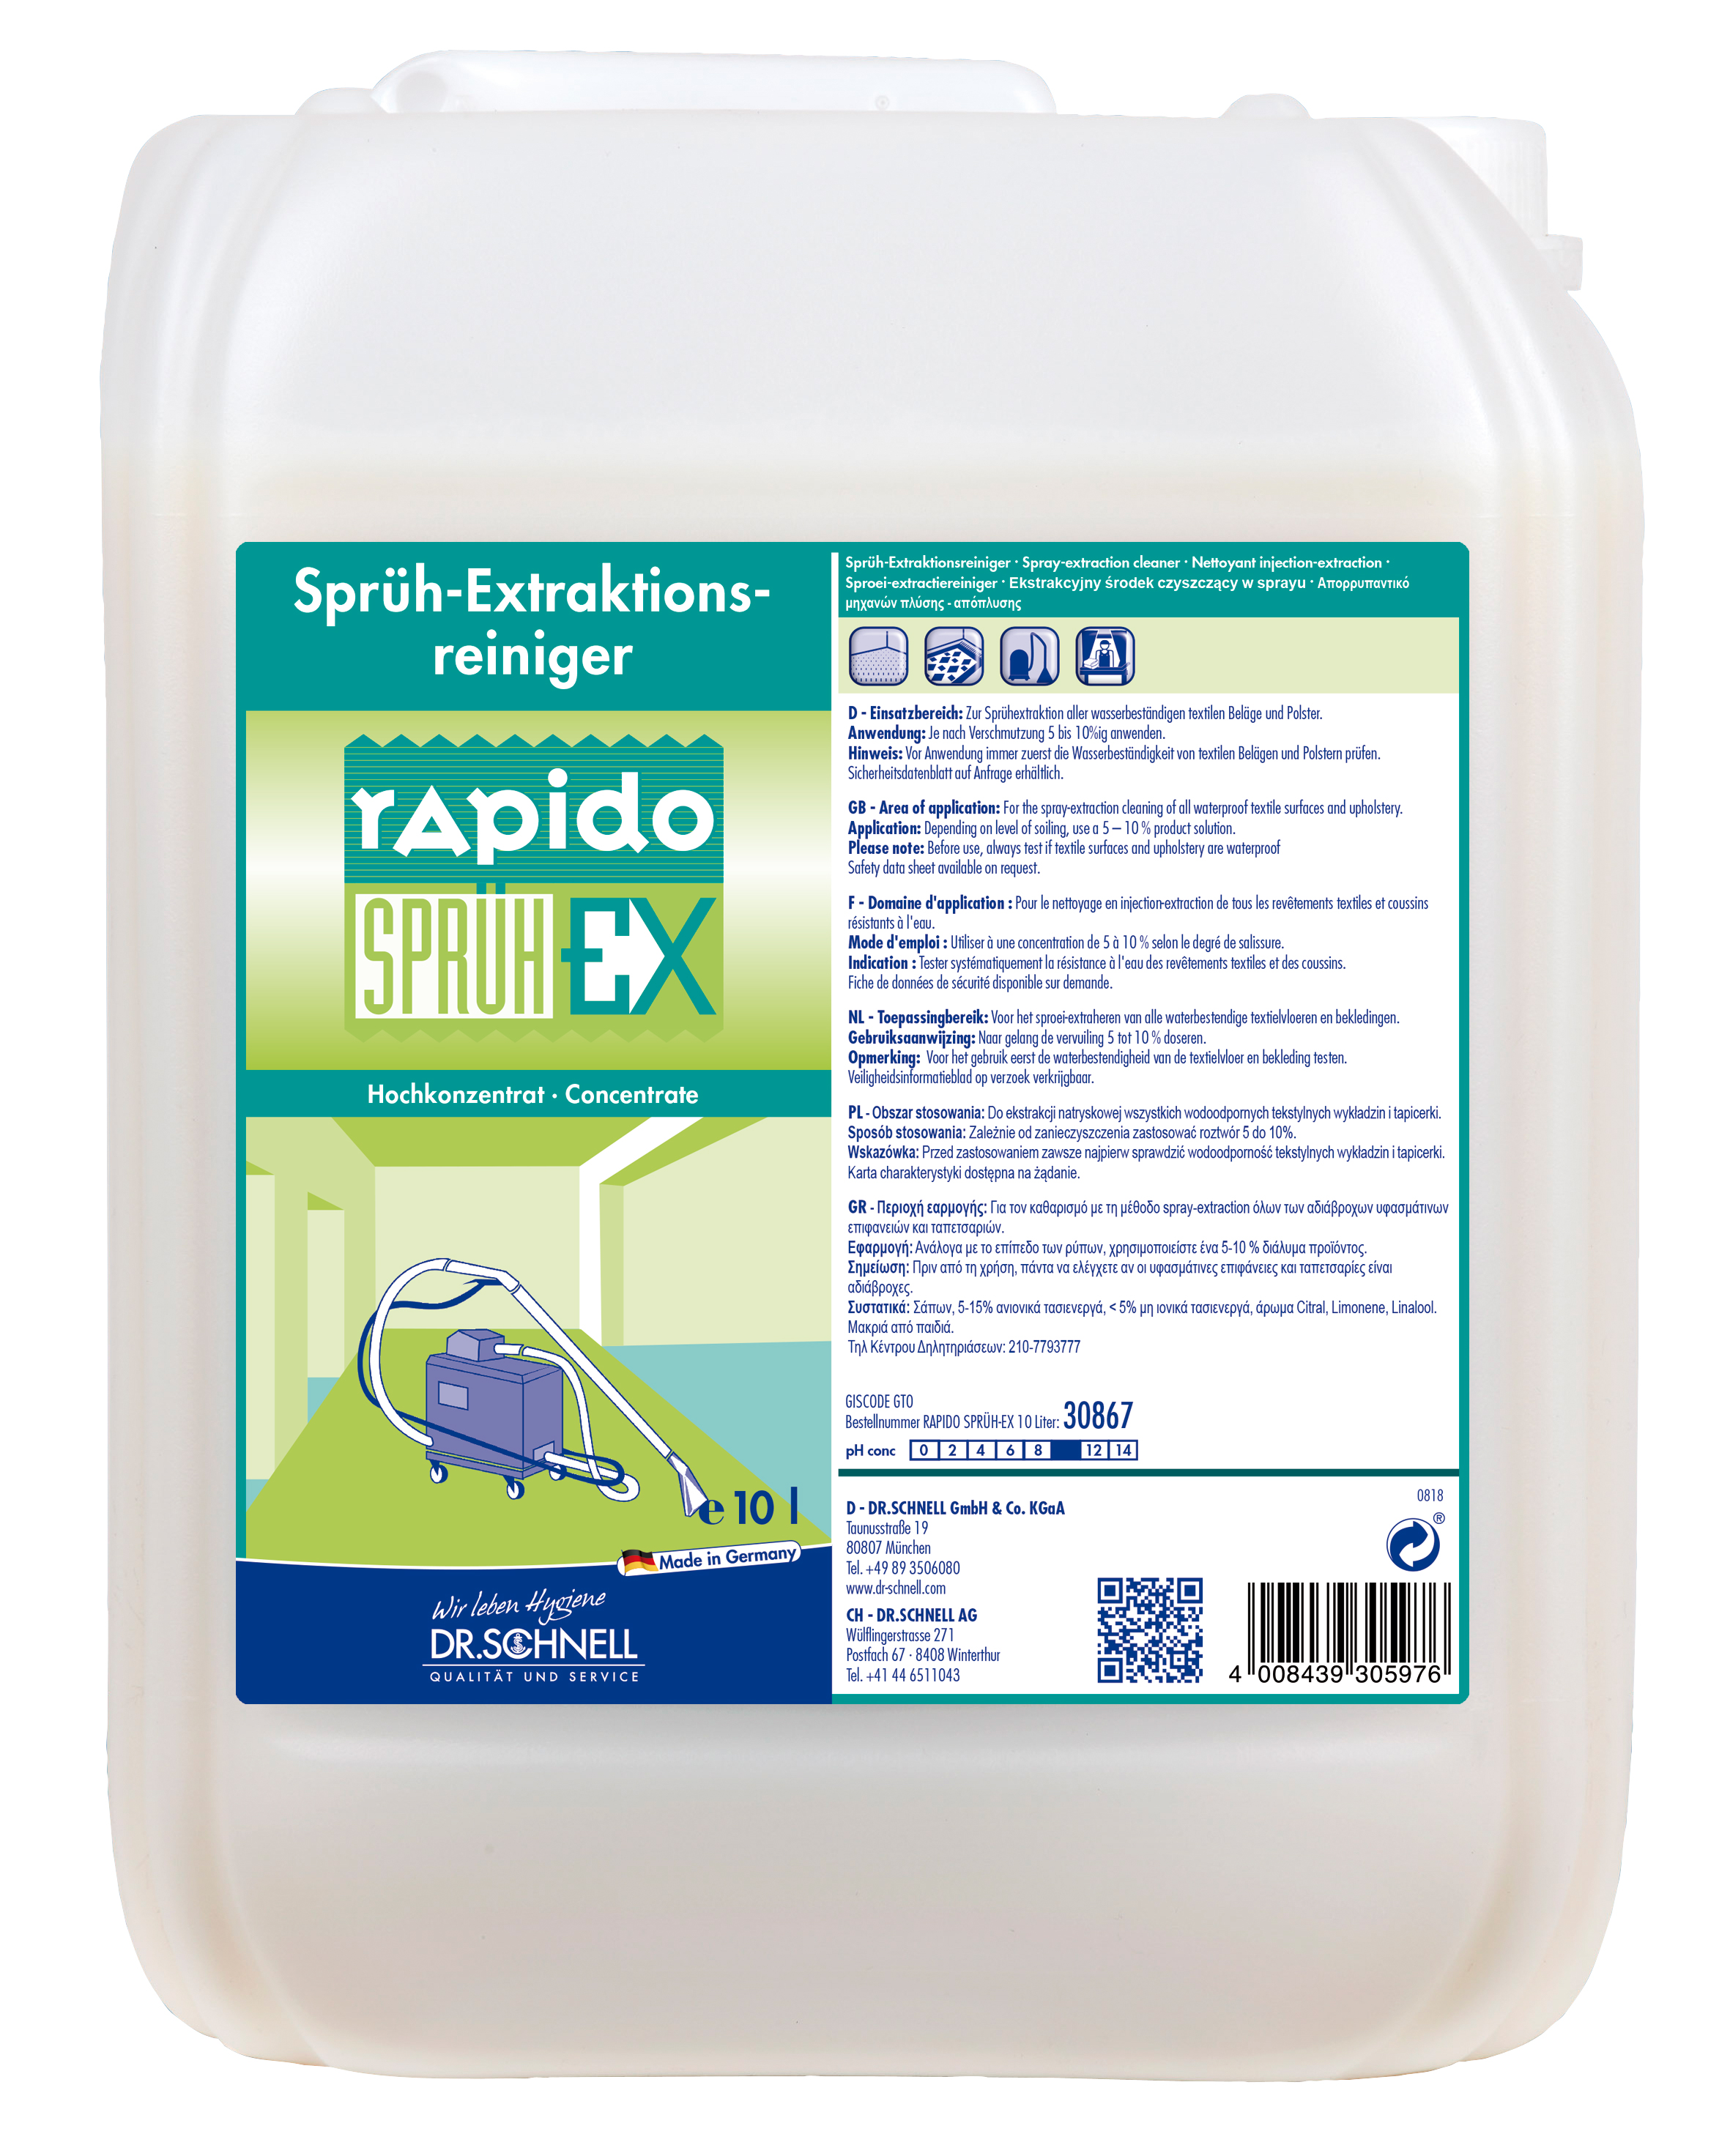 RAPIDO Sprüh-Ex, 10 L, Sprühex-,traktionsmittel, Dr. Schnell